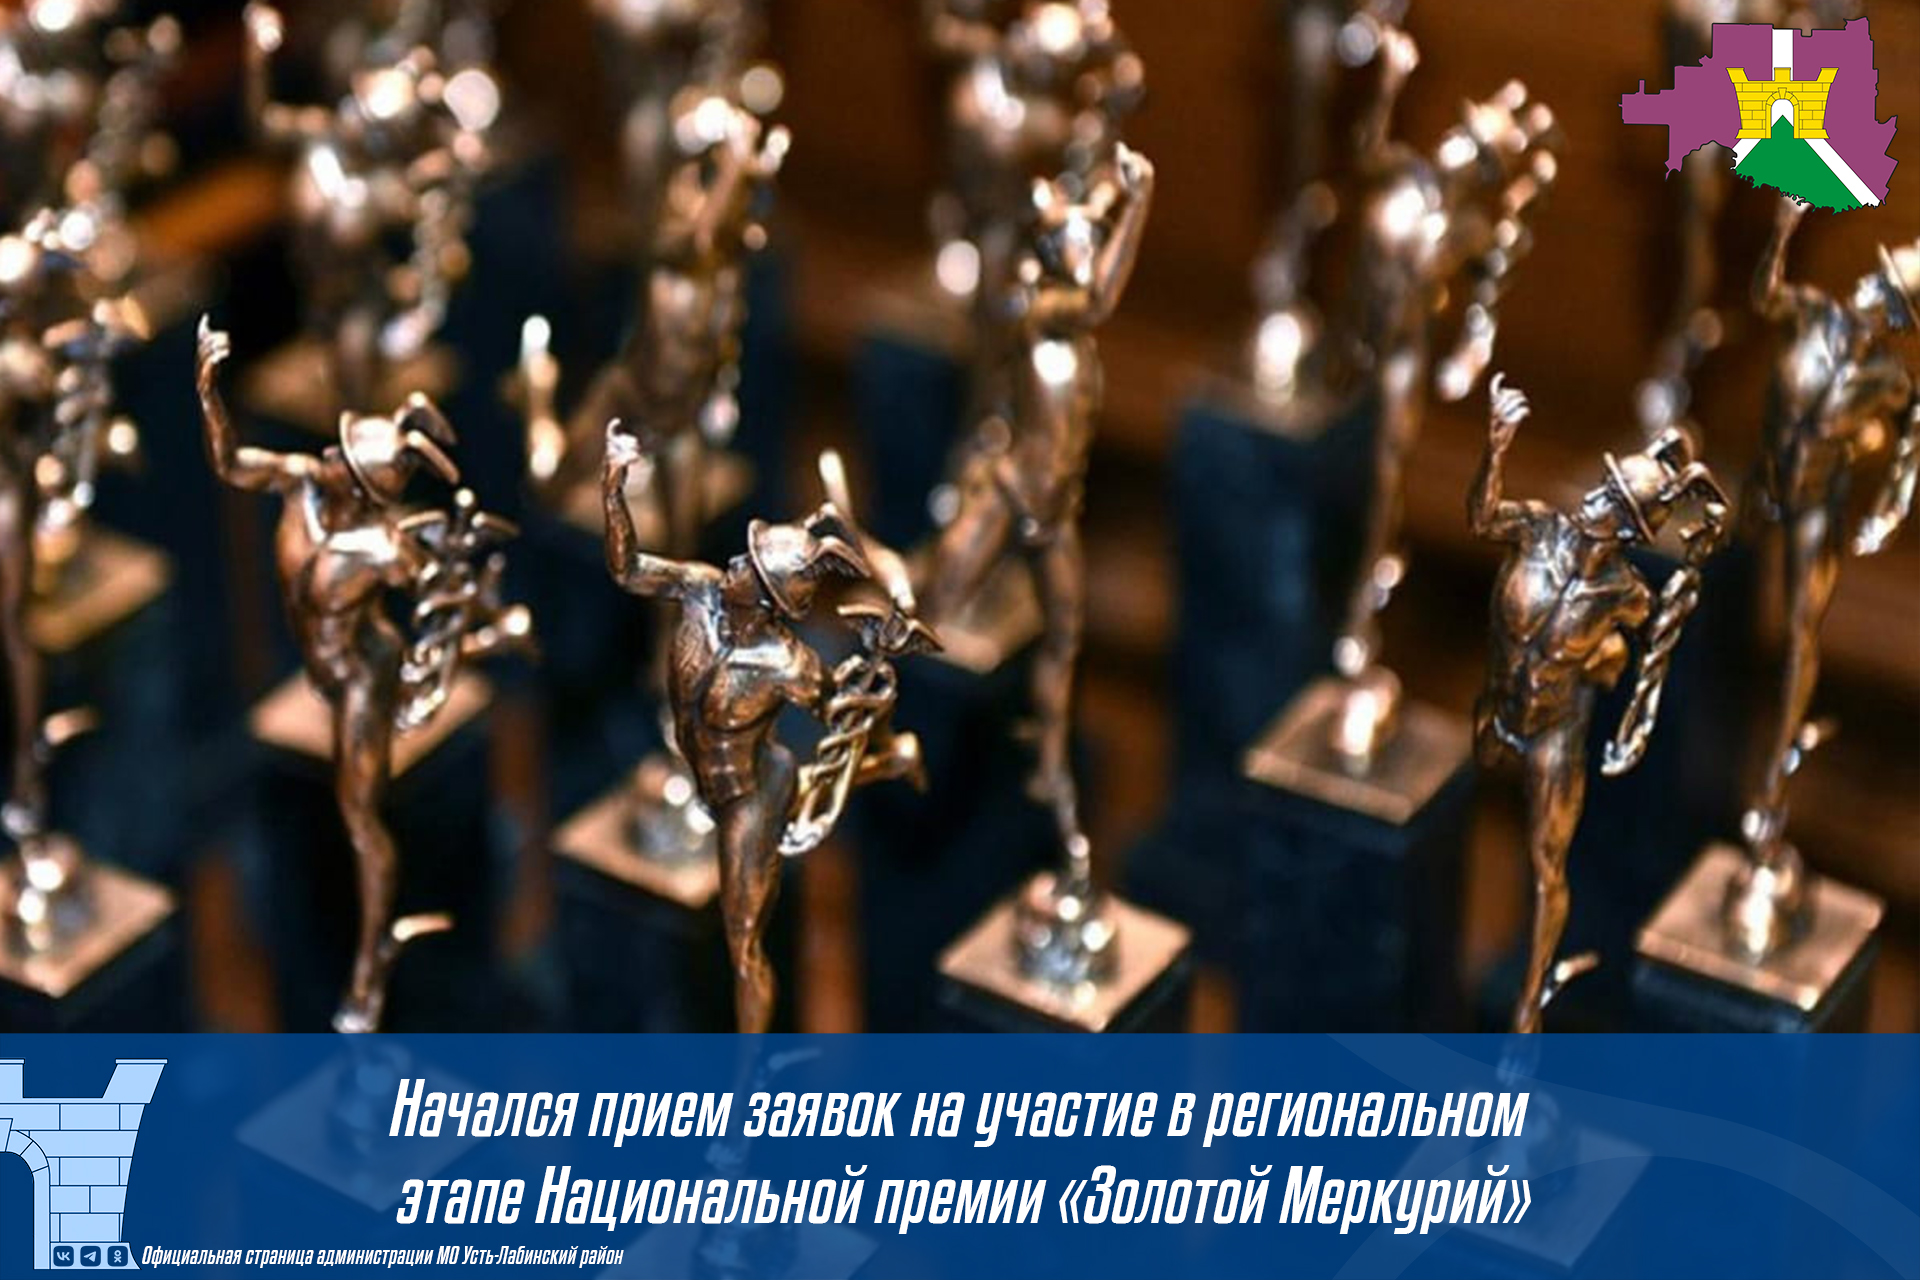 Начался прием заявок на участие в региональном этапе Национальной премии «Золотой Меркурий»